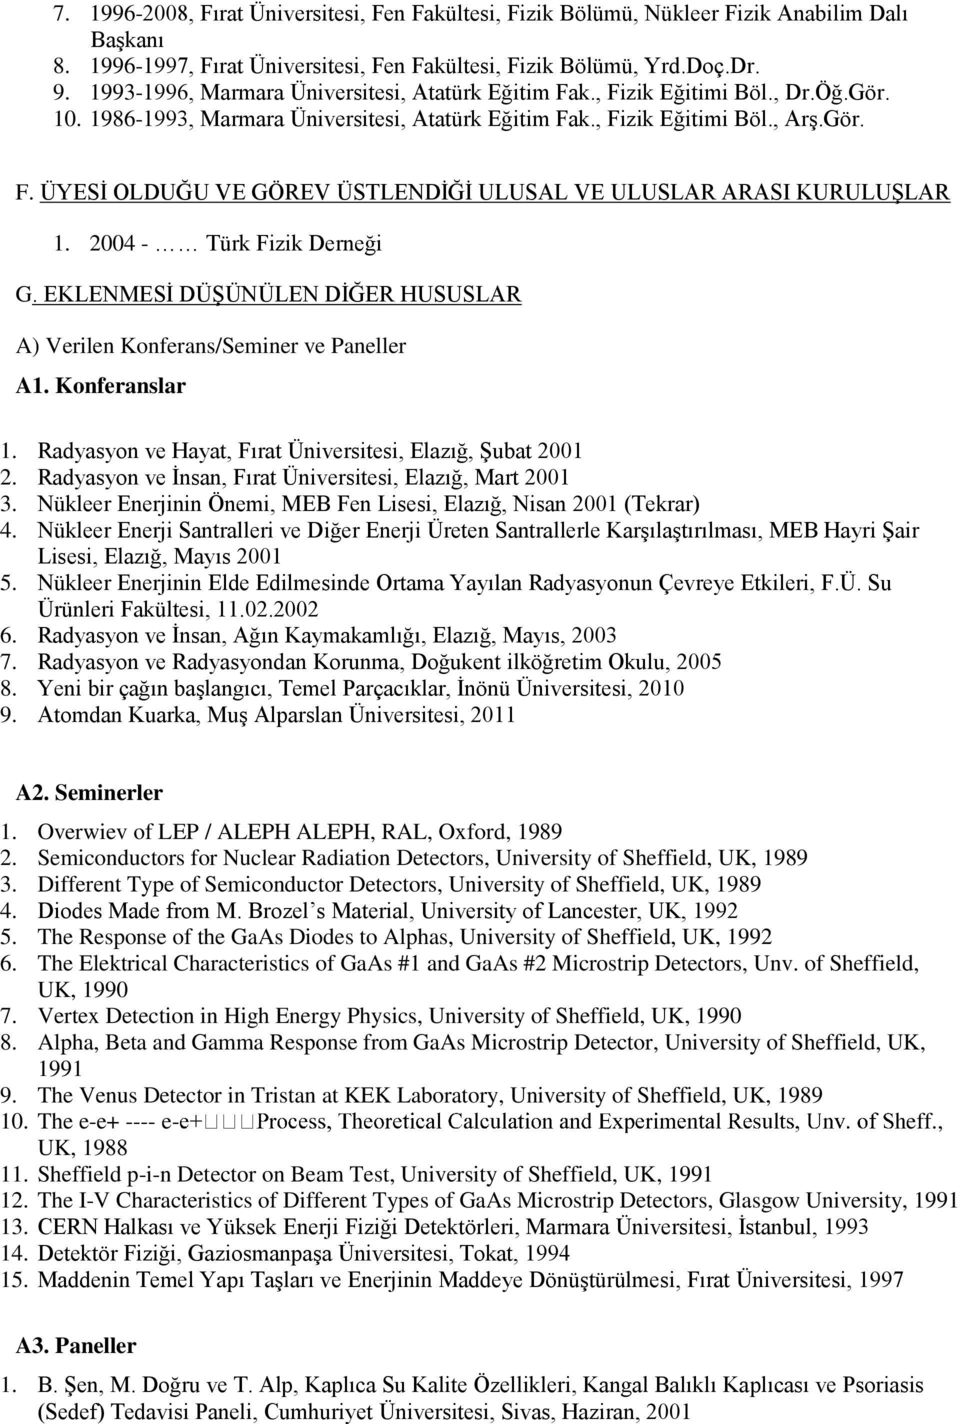 2004 - Türk Fizik Derneği G. EKLENMESİ DÜŞÜNÜLEN DİĞER HUSUSLAR A) Verilen Konferans/Seminer ve Paneller A1. Konferanslar 1. Radyasyon ve Hayat, Fırat Üniversitesi, Elazığ, Şubat 2001 2.